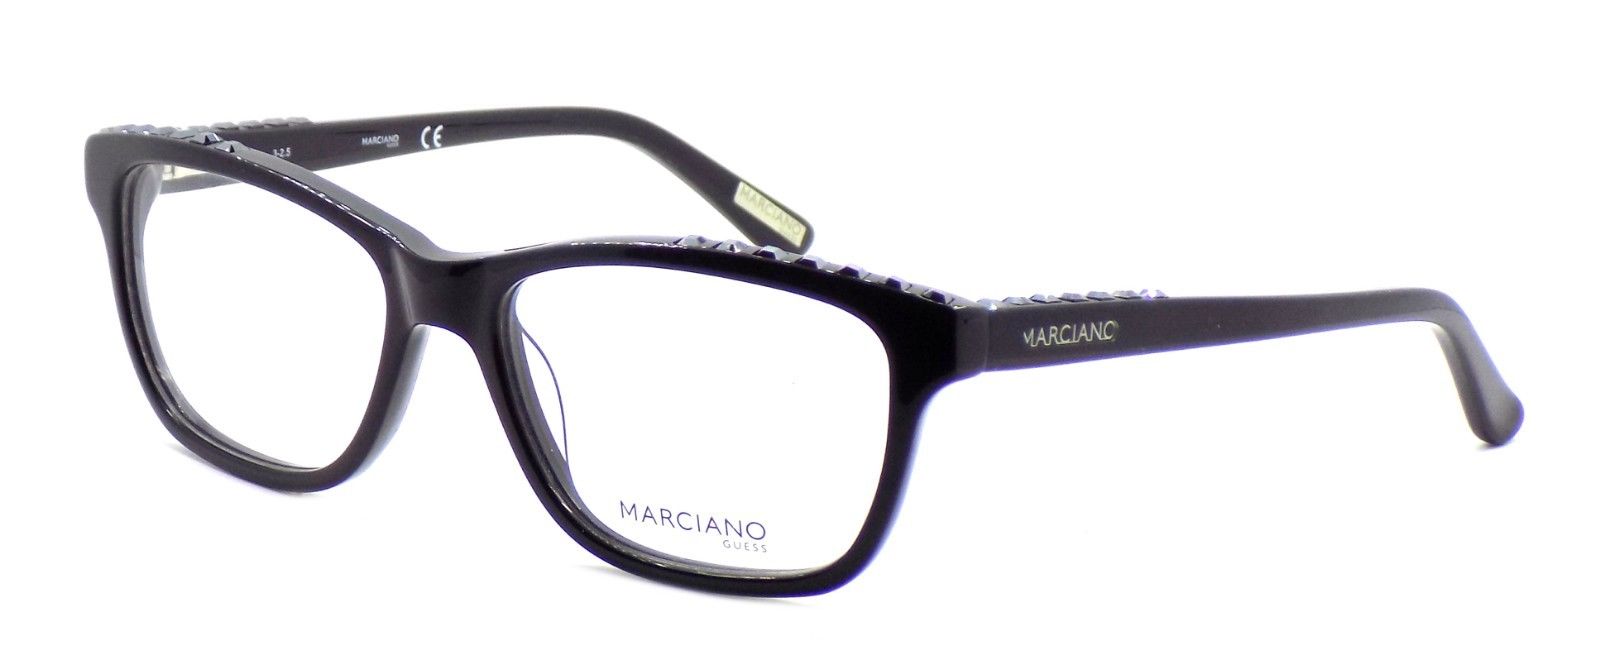 1-GUESS by Marciano GM0283 001 Women's Eyeglasses Frames 53-16-135 Black + Case-664689779857-IKSpecs